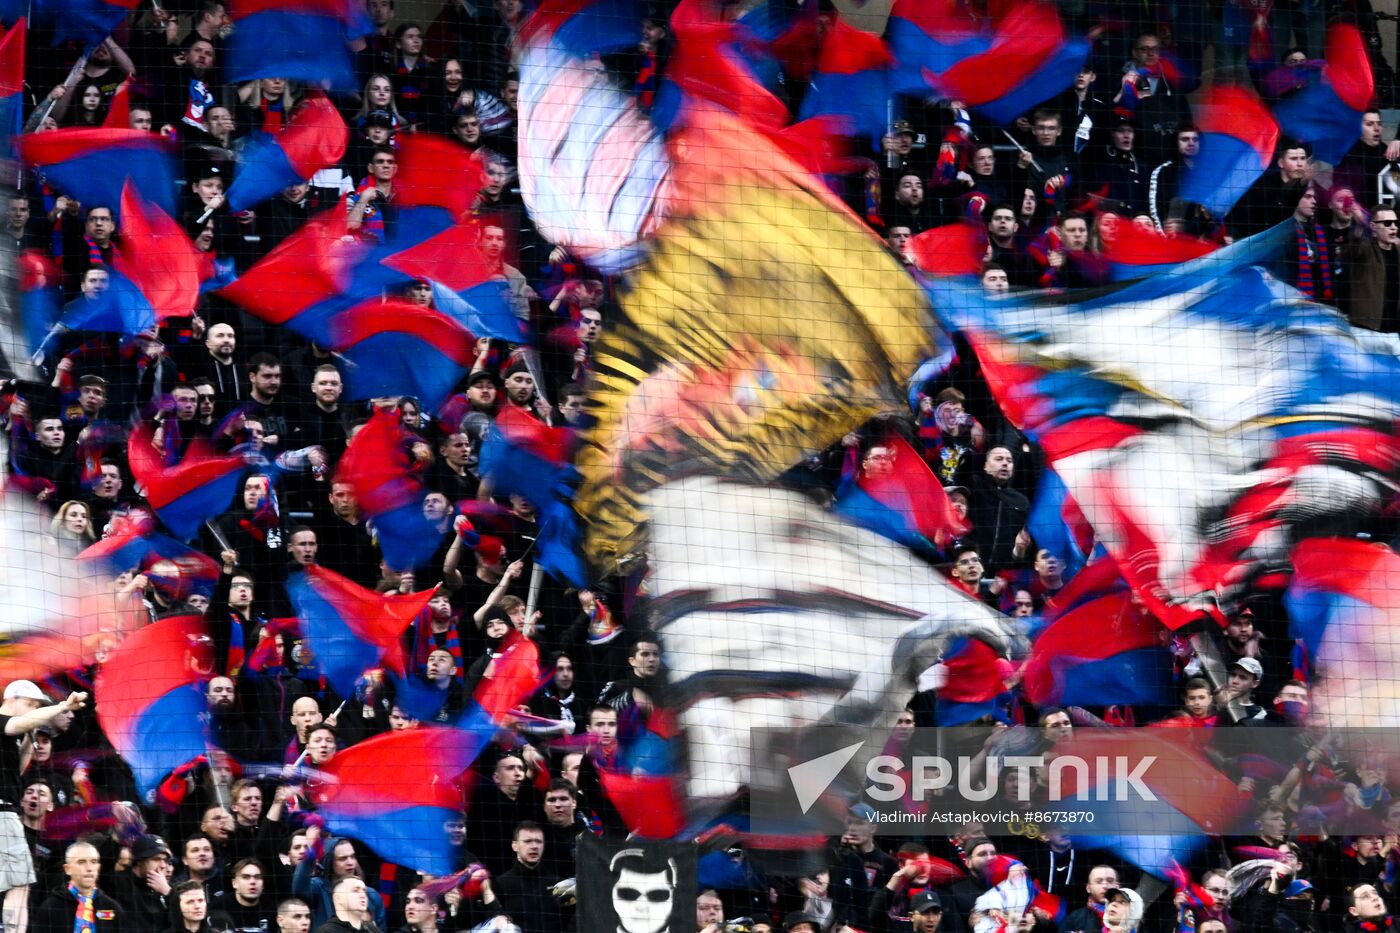 Russia Soccer Cup CSKA - Zenit